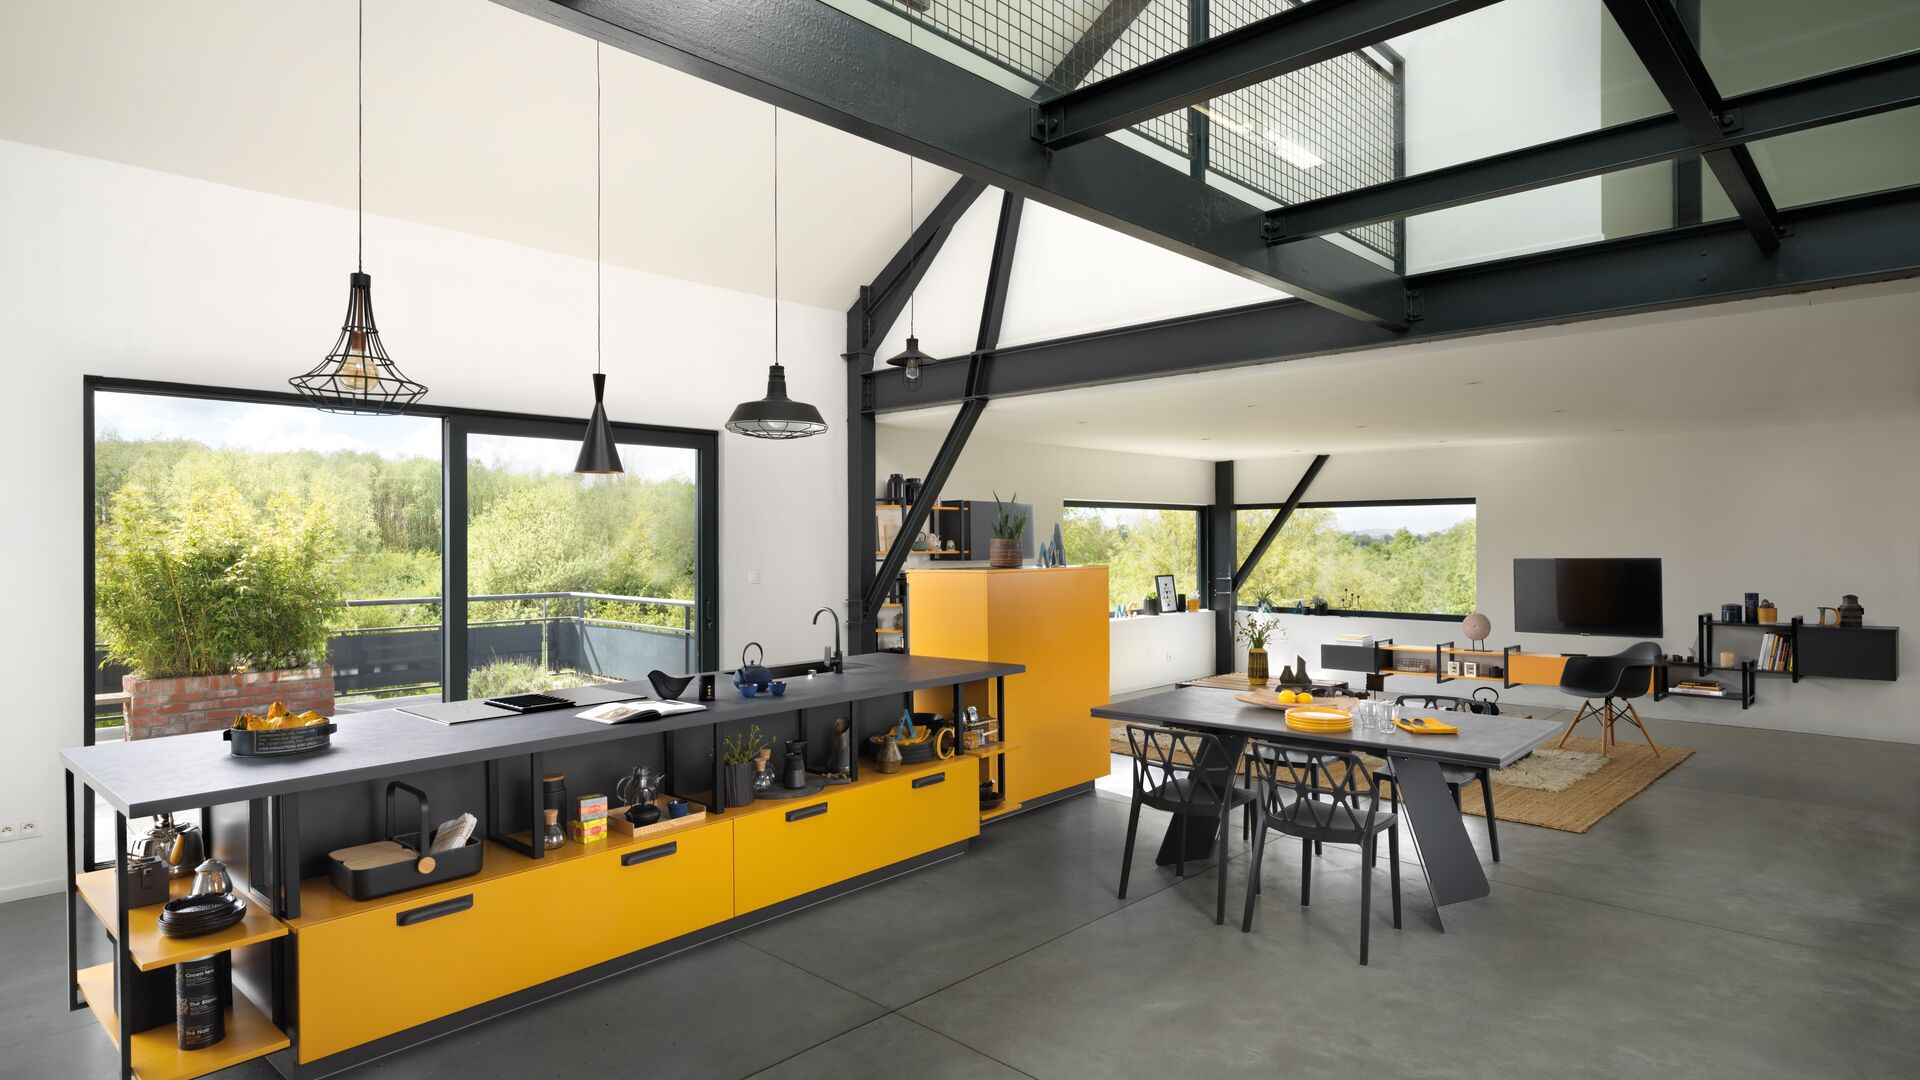 Cocina de diseño amarillo y negro abierta al salón comedor